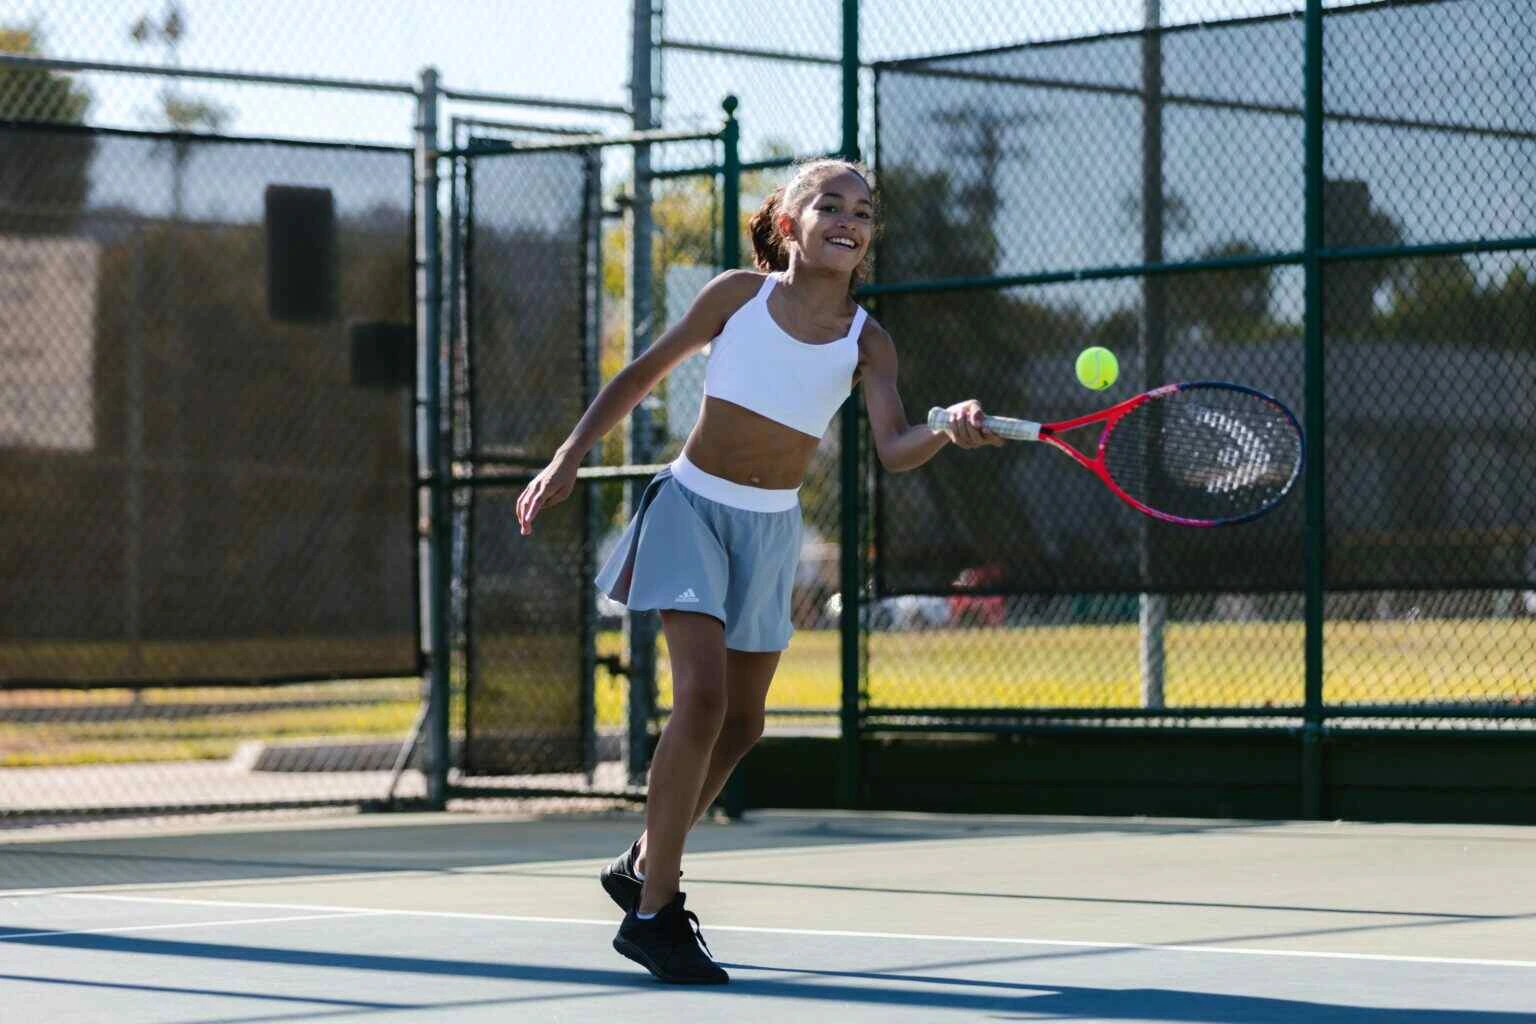 Girl playing Tennis